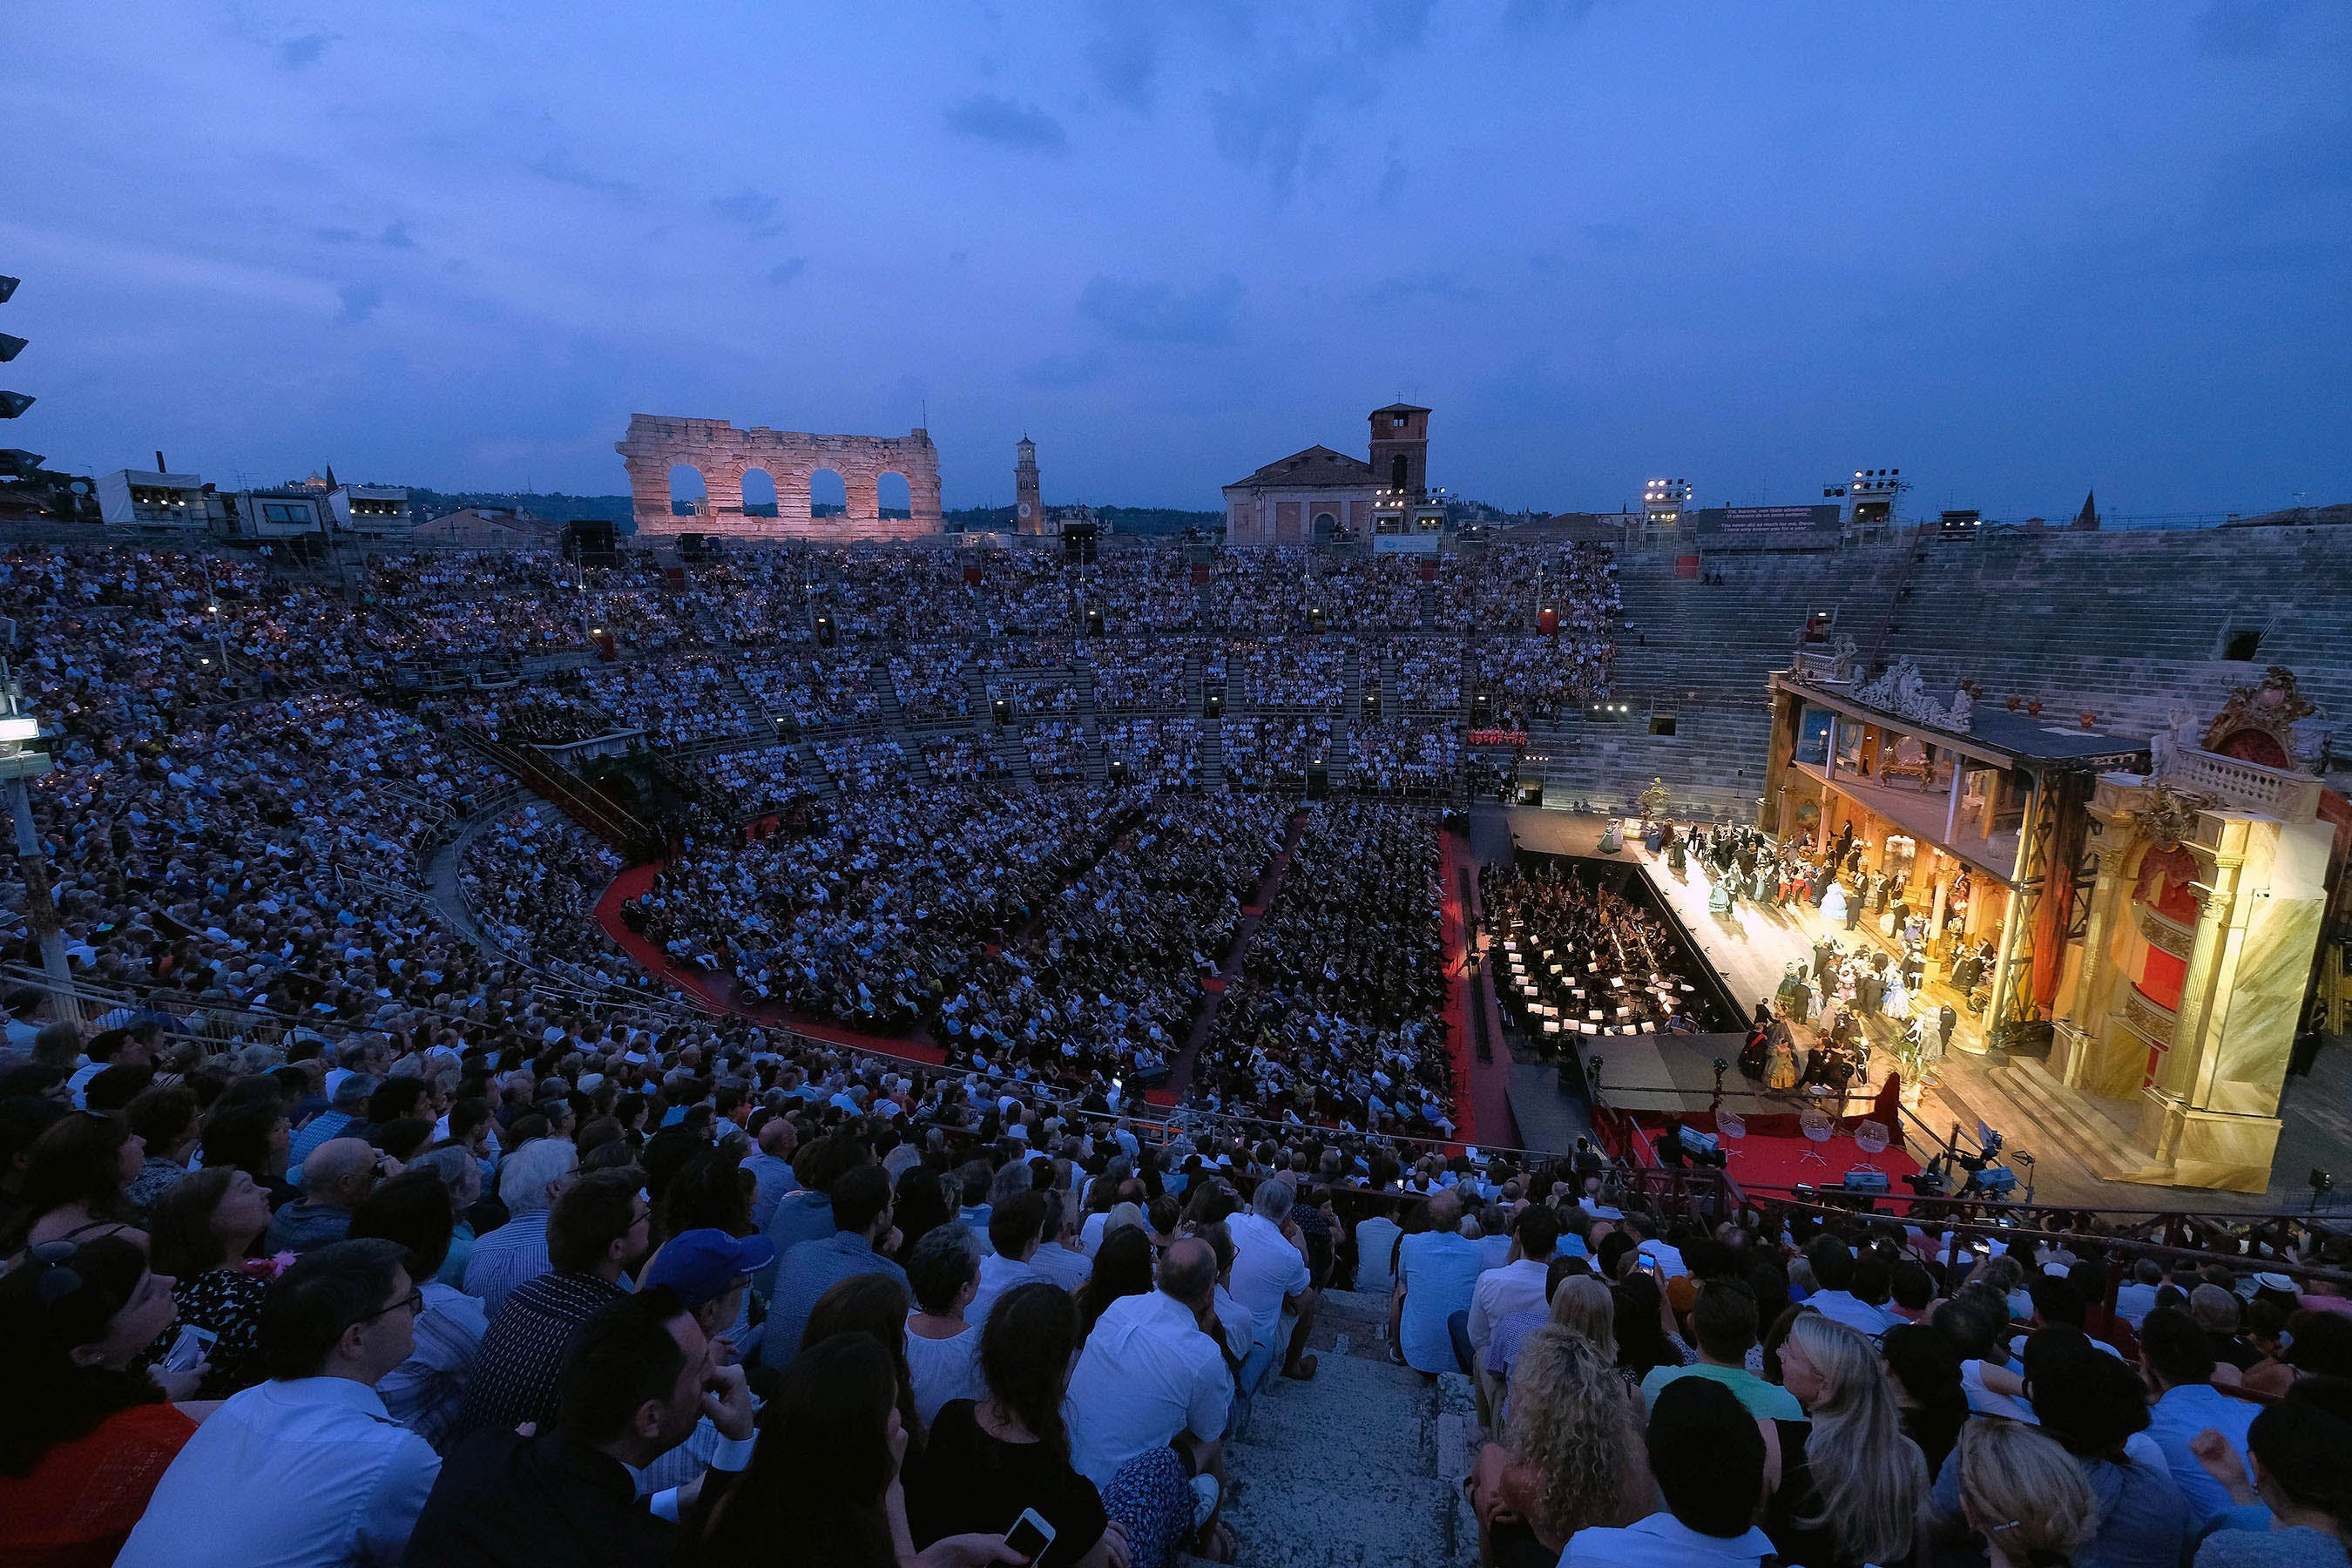 Pacchetto Opera Arena di Verona con biglietti, tour della città e trasporto pubblico